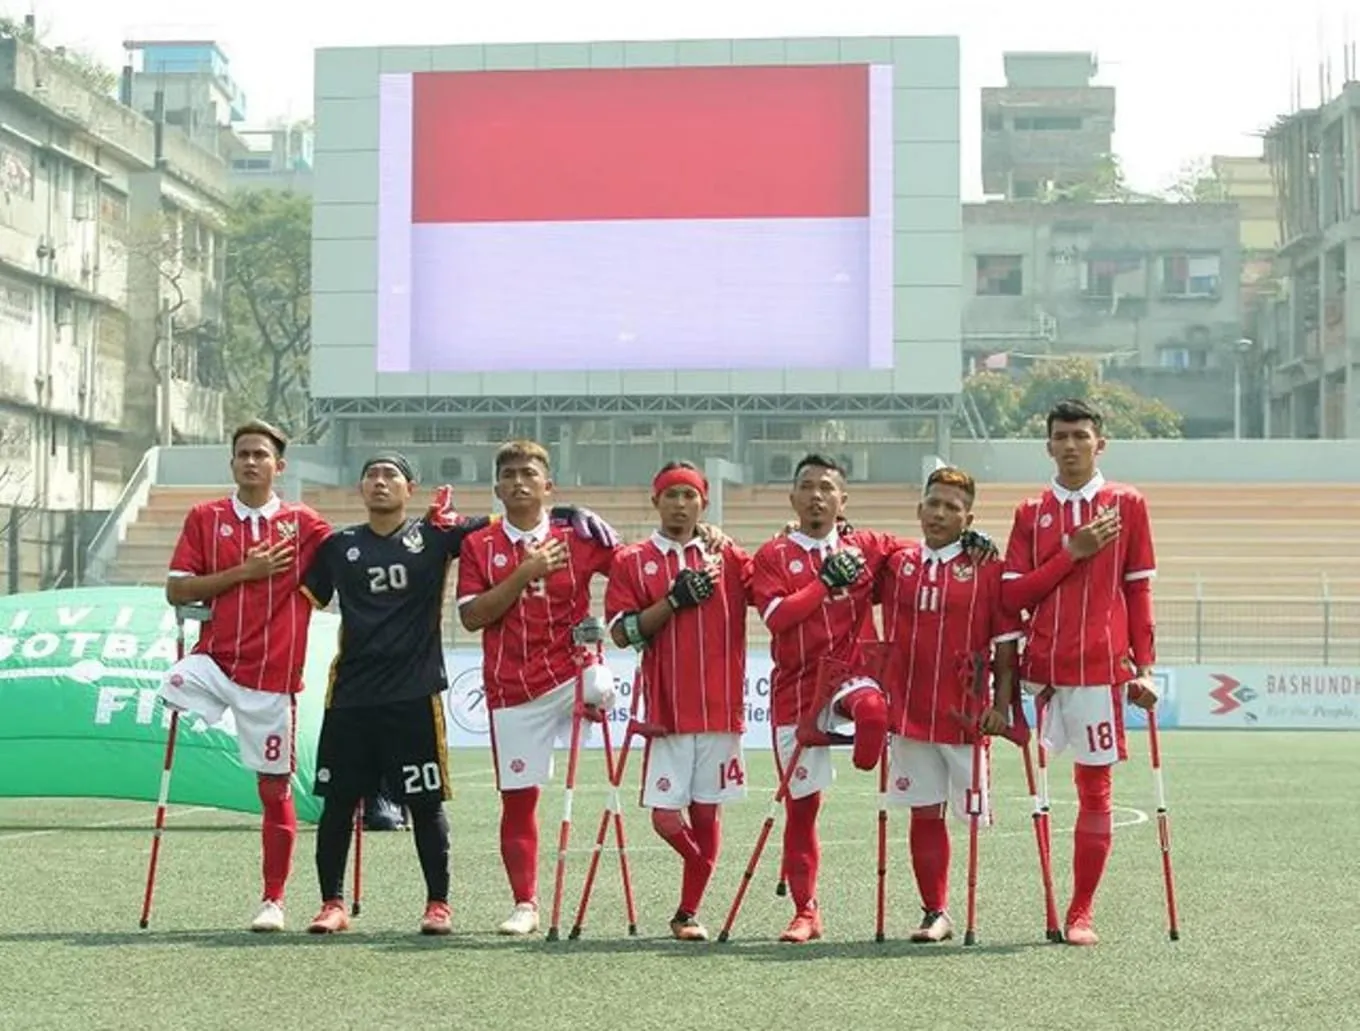 2 triệu người đòi cấm Haaland chơi bóng - ‘Đội bóng 1 chân’ Indonesia đánh bại ĐT Đức